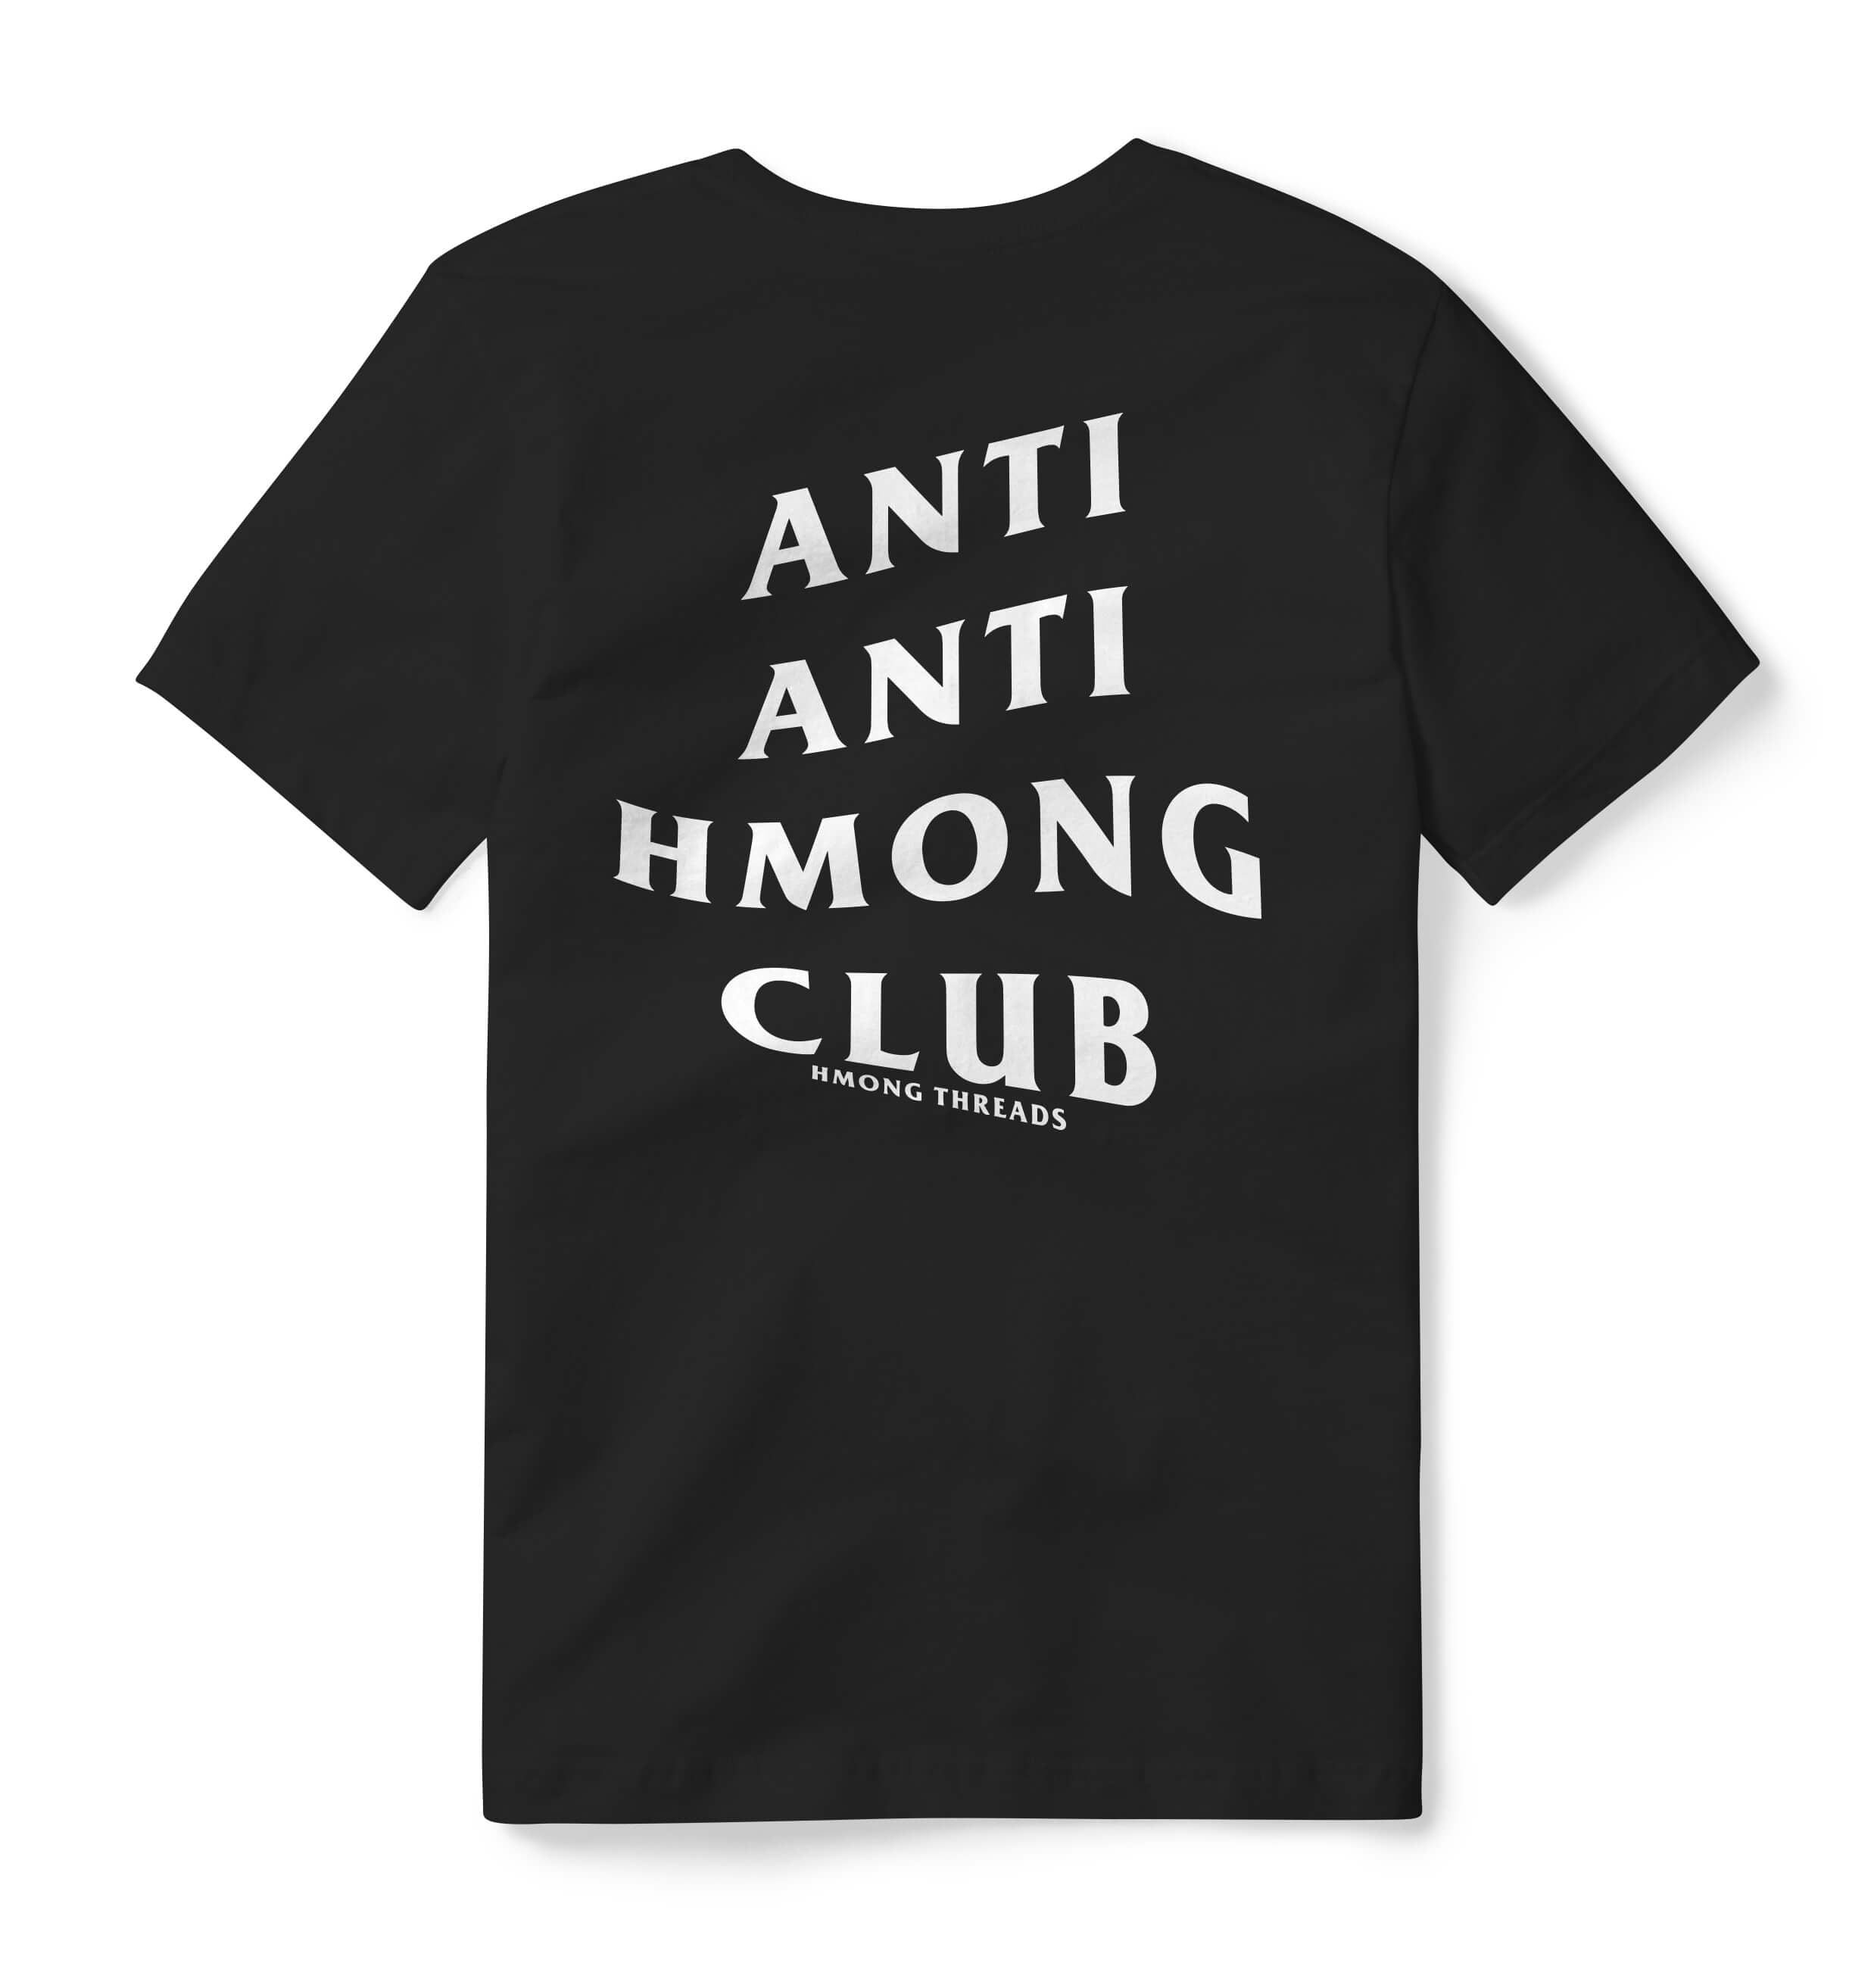 ANTI ANTI HMONG CLUB T-SHIRT